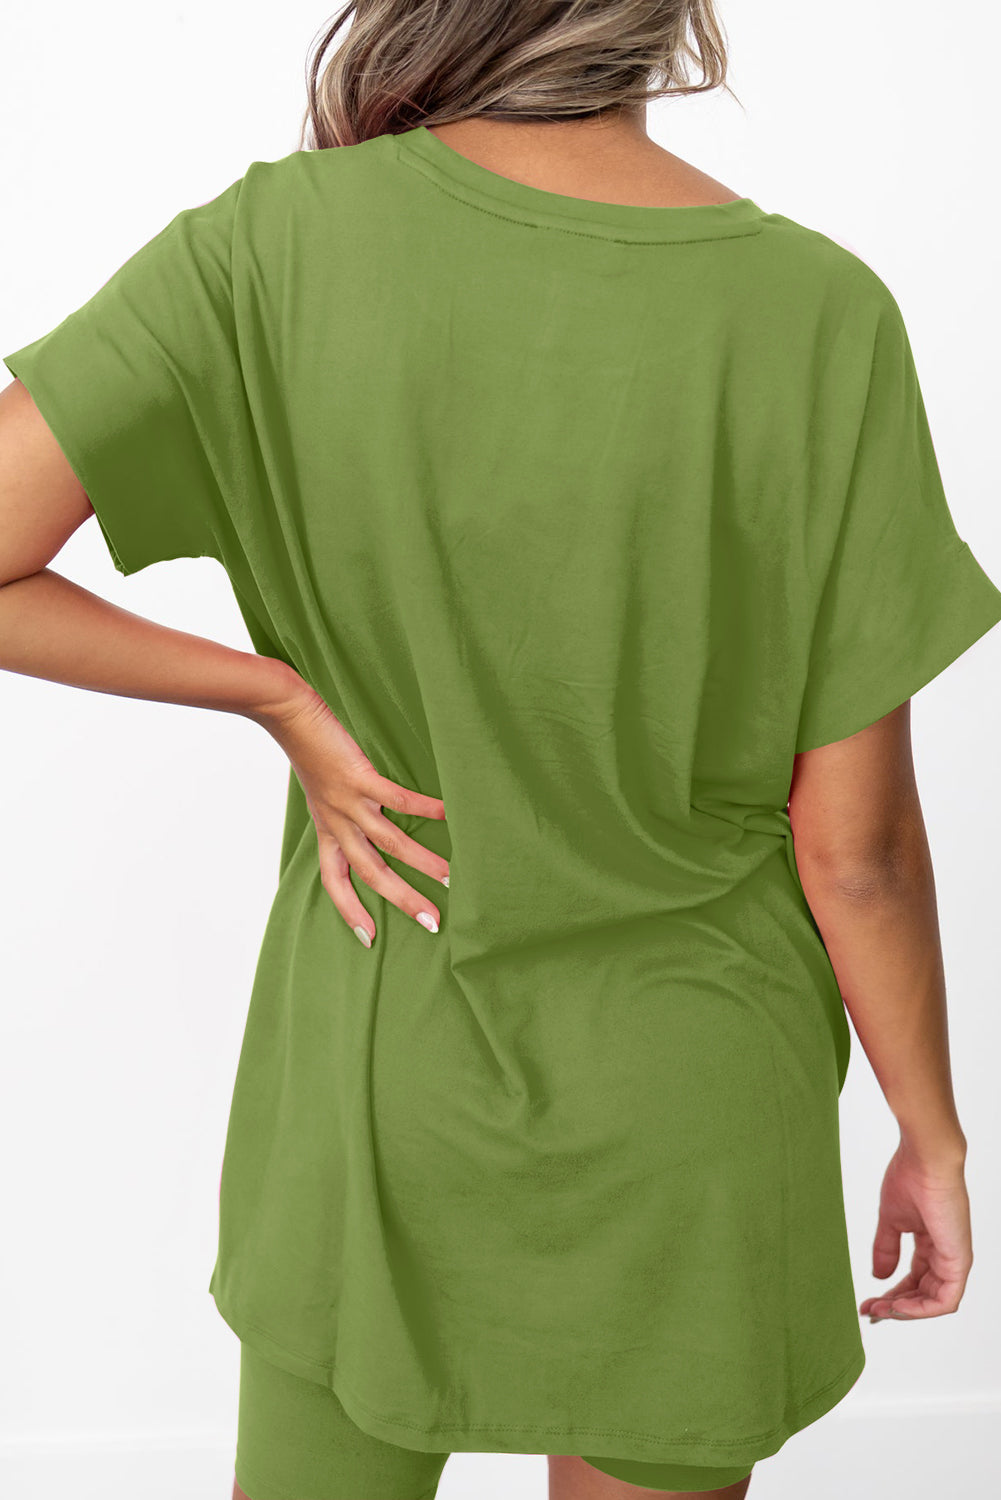 Ensemble t-shirt tunique et short moulant vert épinard uni à ourlet fendu